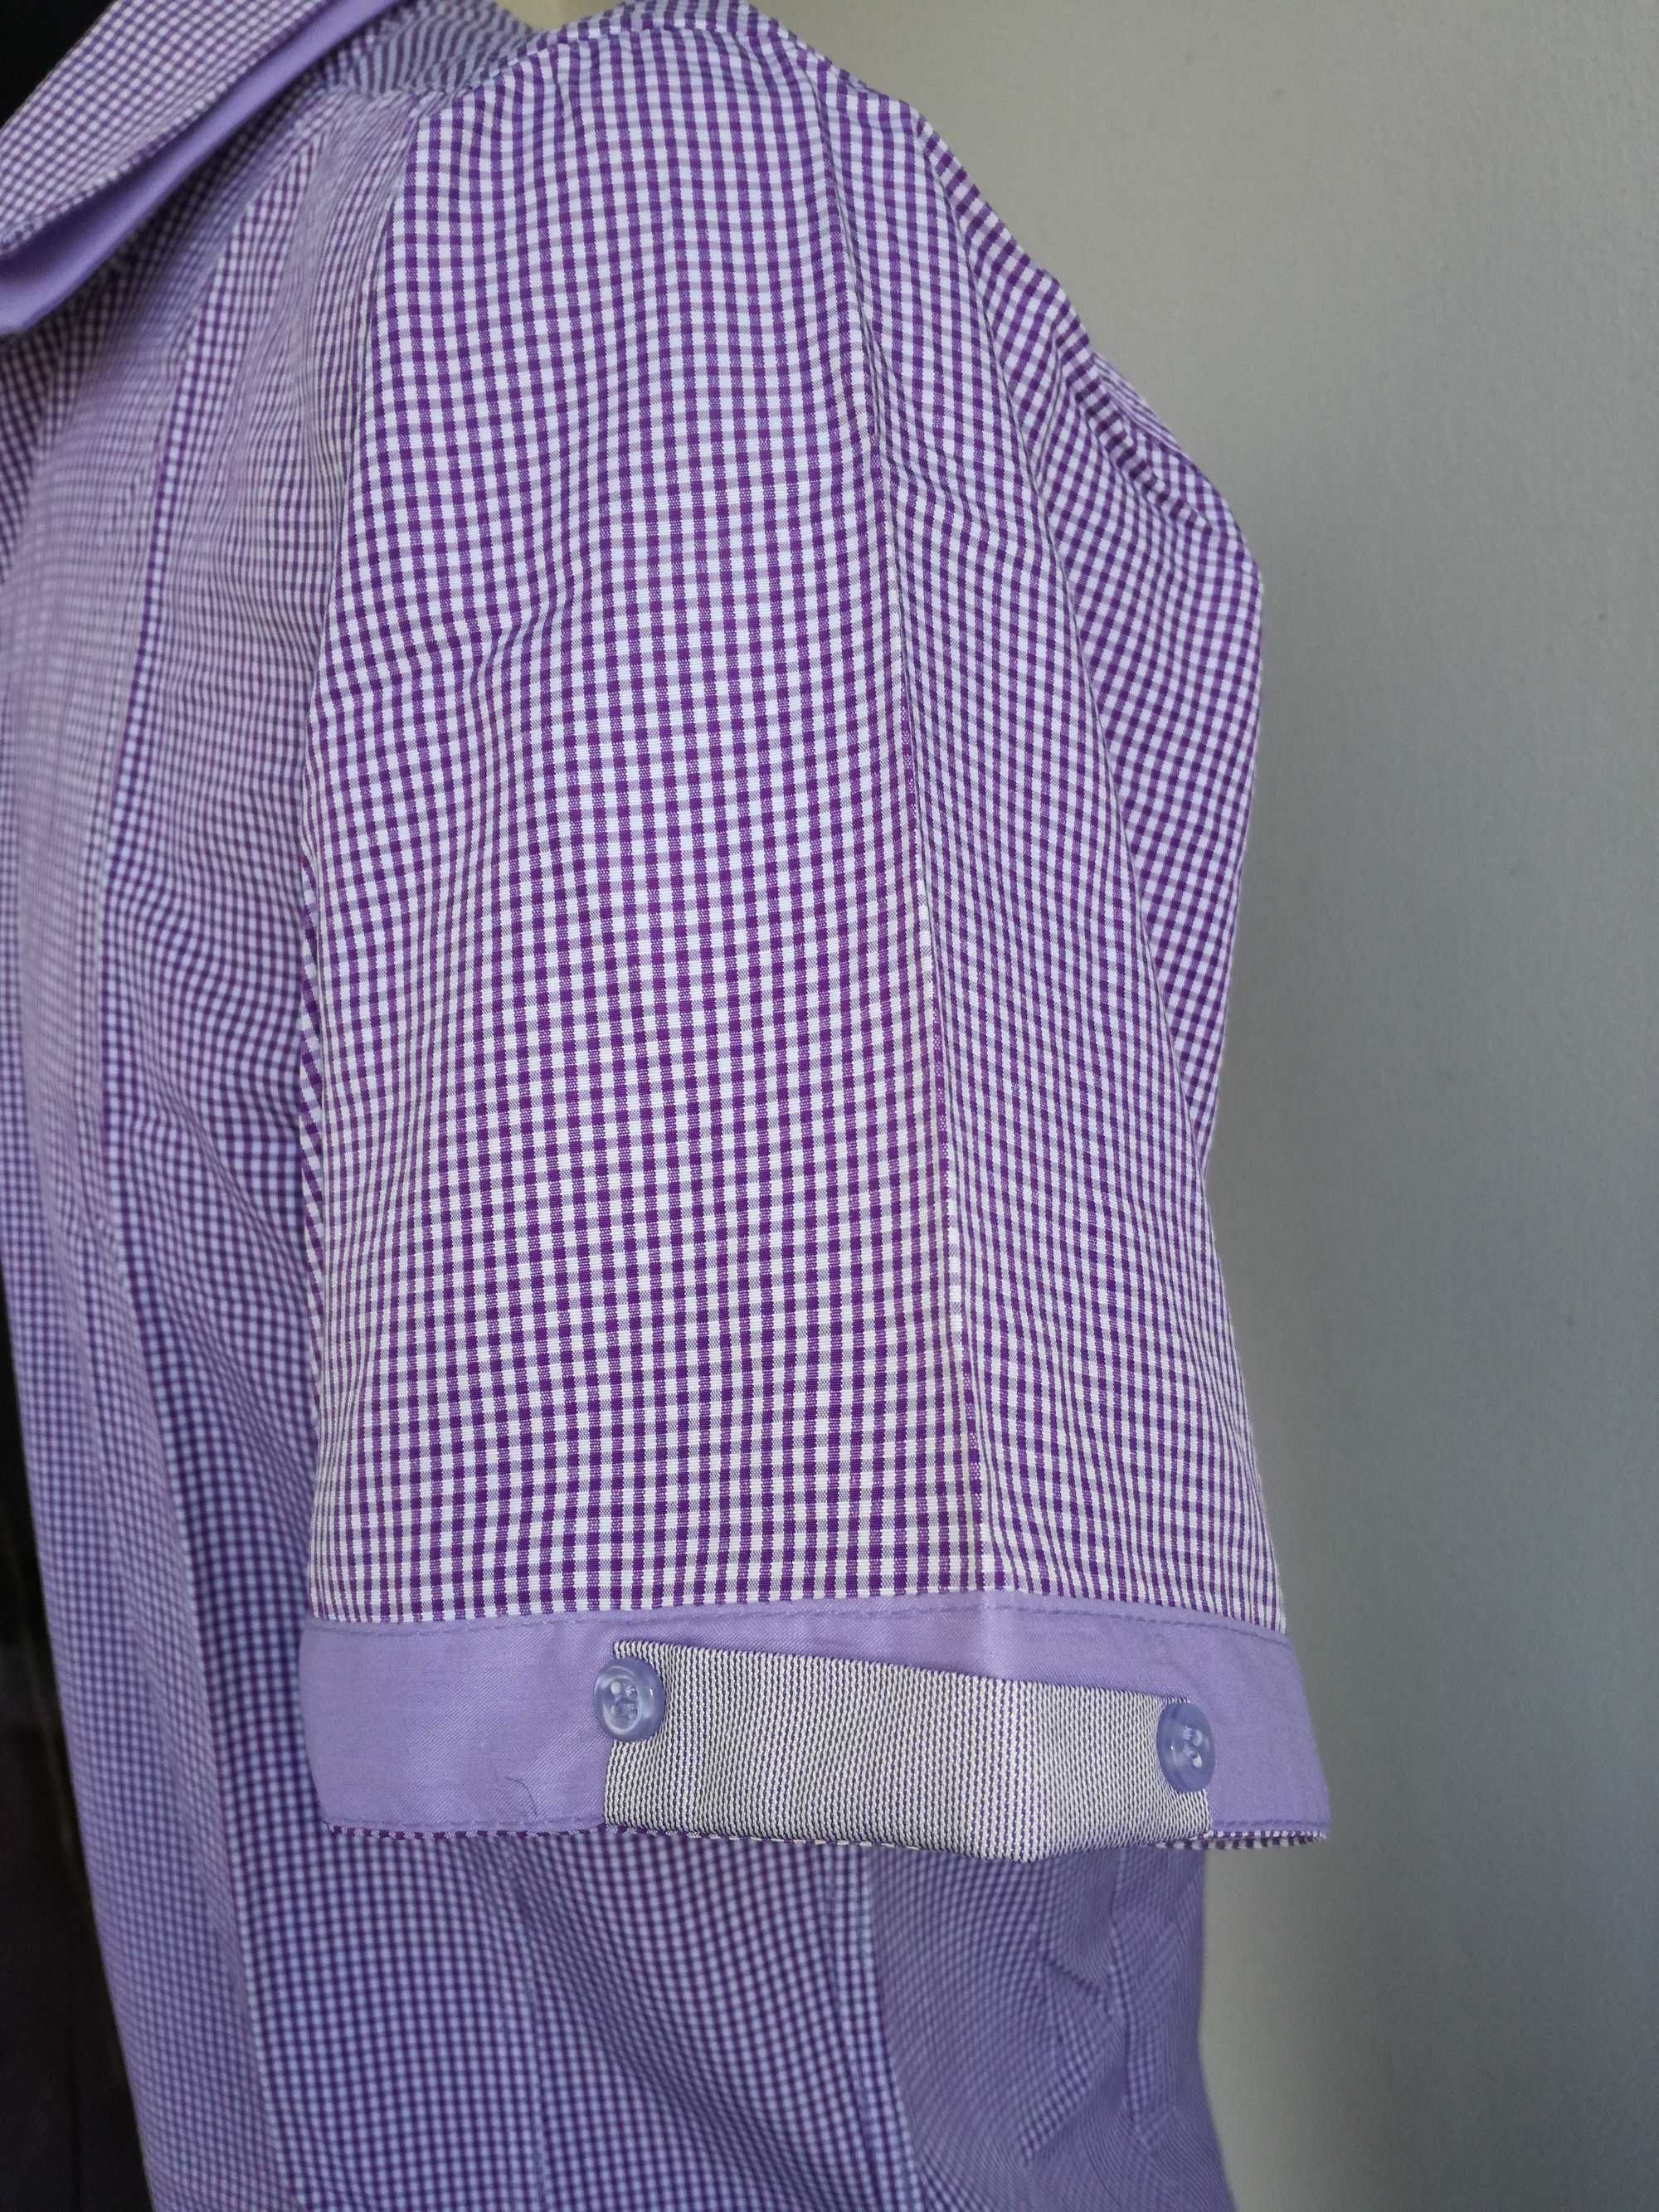 Koszula męska nowa 39-40 rozmiar kolor fiolet w kratkę